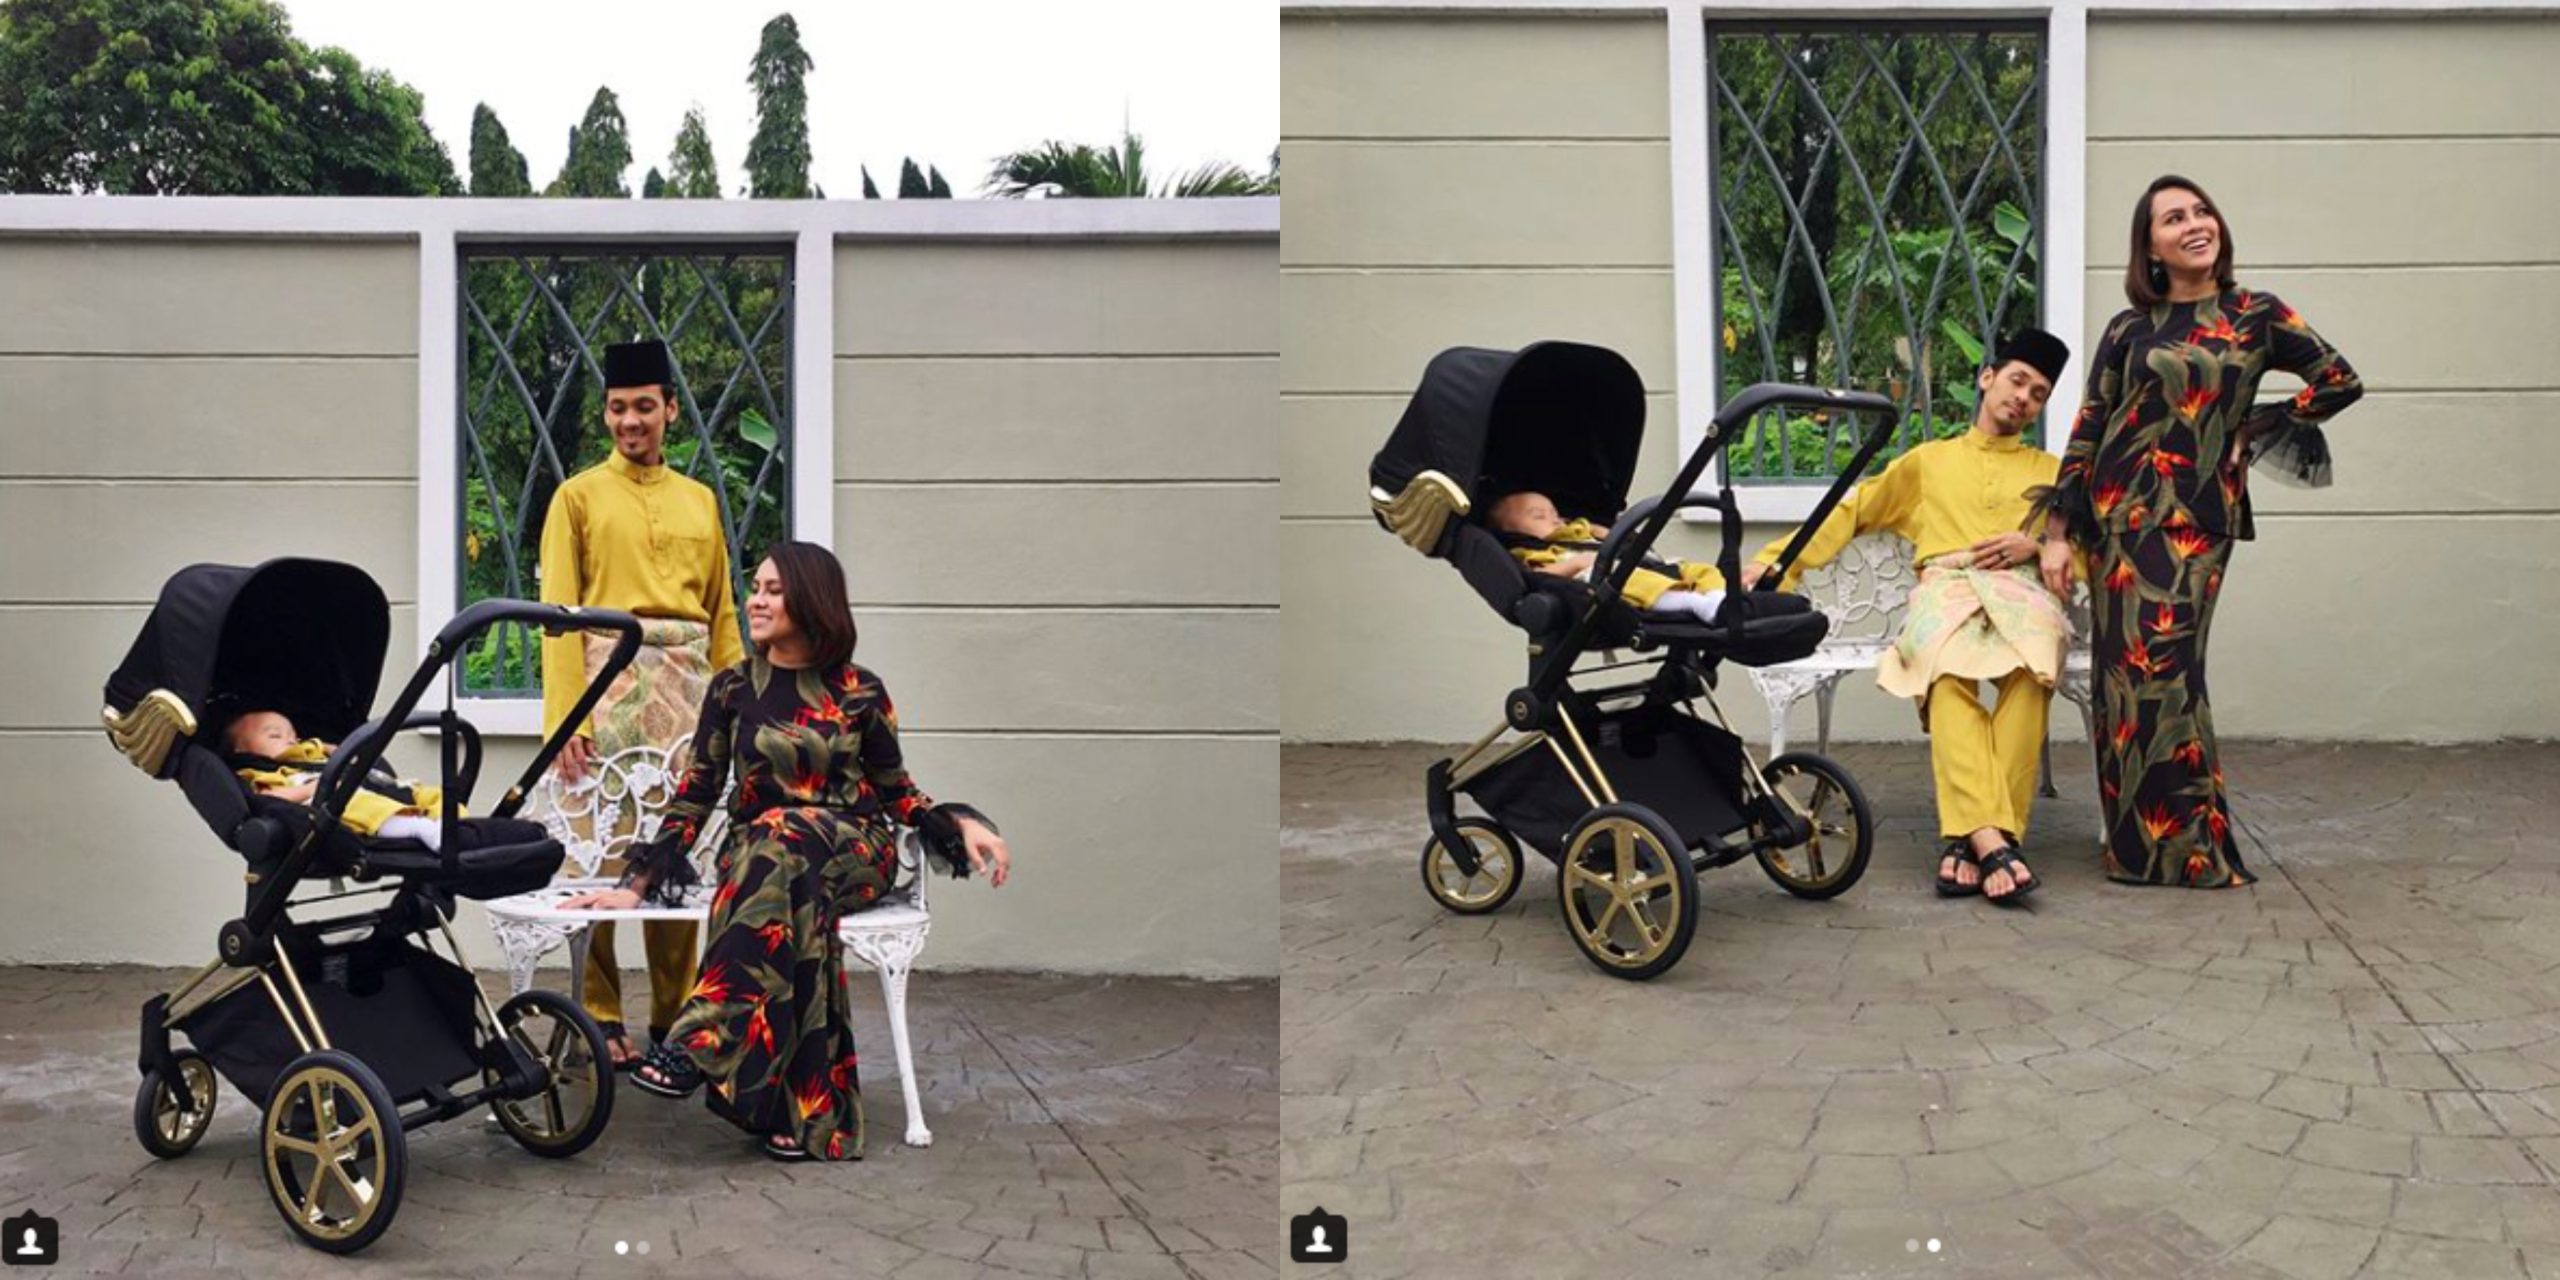 ‘Aku Harap Budak Tu Tak Jadi Raver’ – Harga Stroller Anak Jihan Muse Jadi Perhatian Netizen